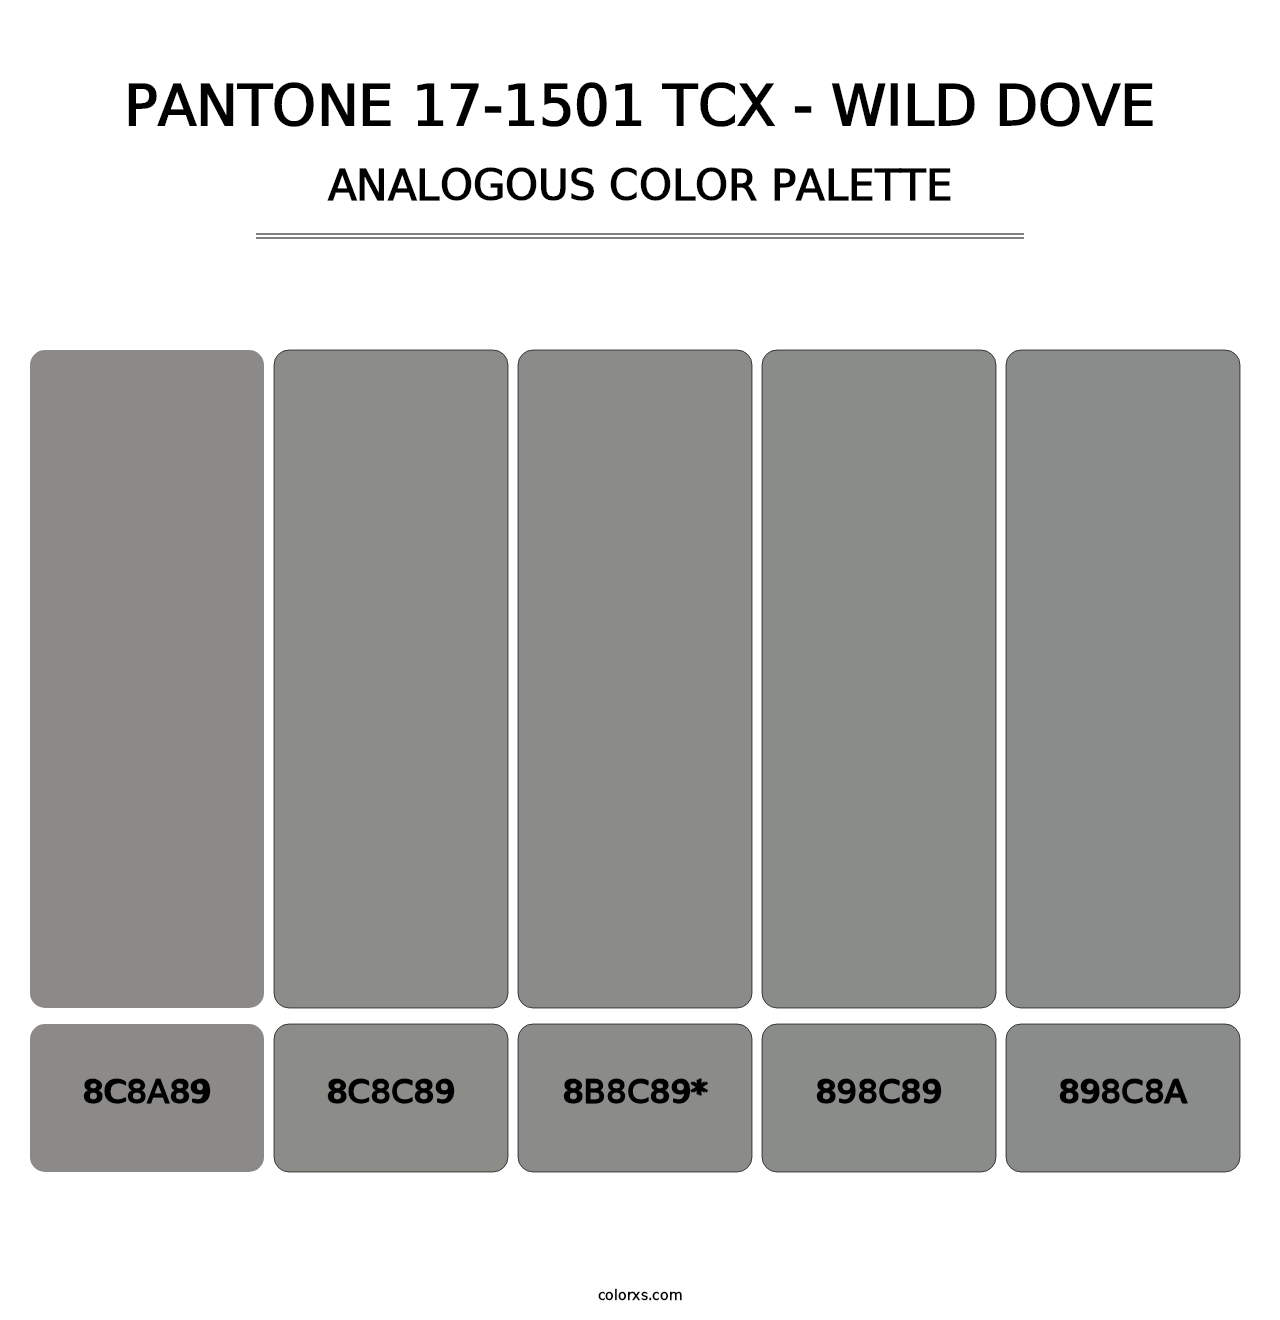 PANTONE 17-1501 TCX - Wild Dove - Analogous Color Palette